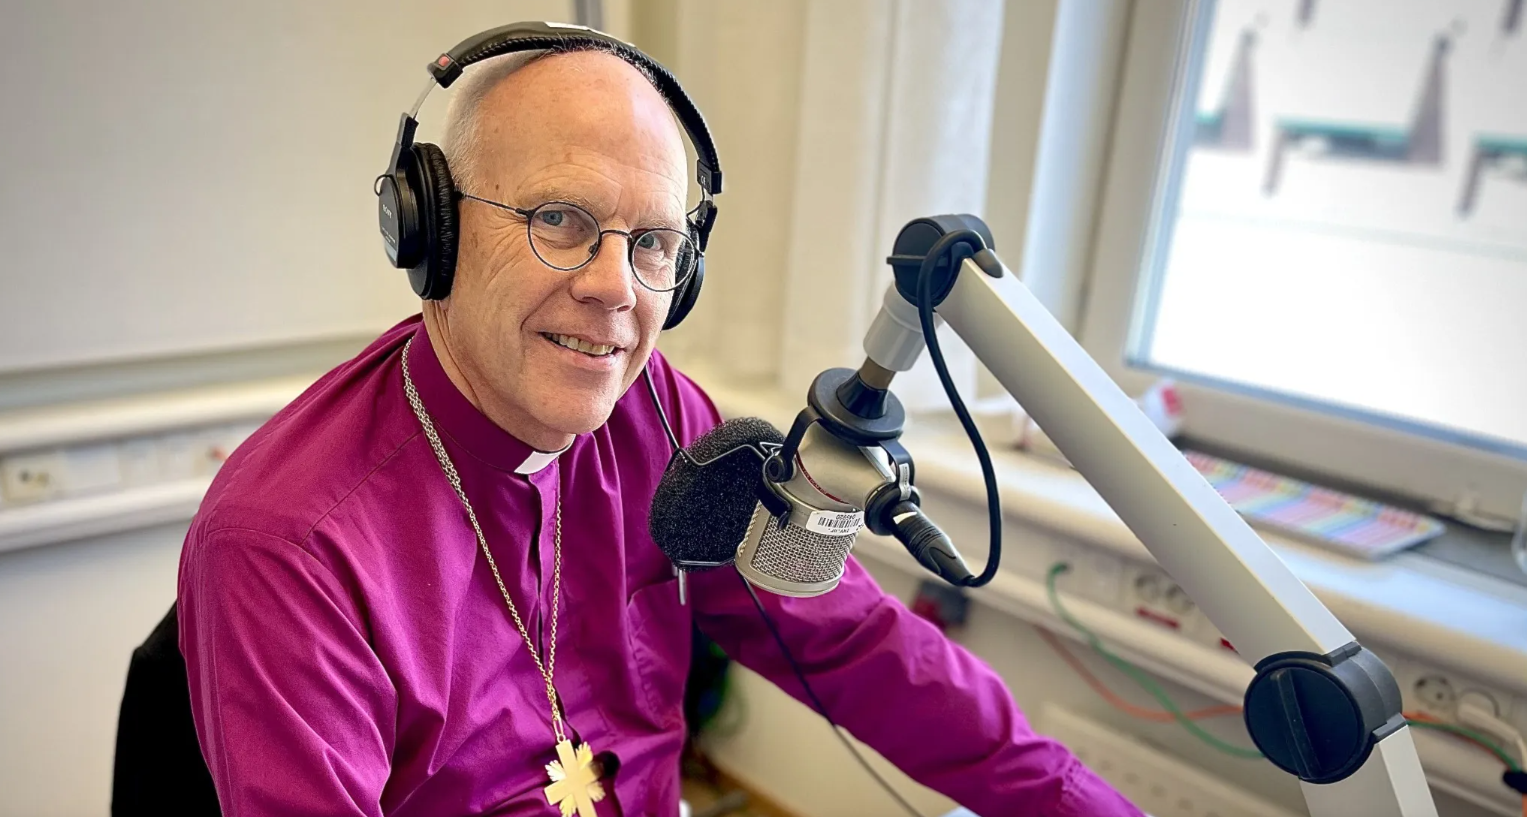 Ärkebiskop Martin Modéus sitter i en studio med hörlurar och pratar i en mikrofon.